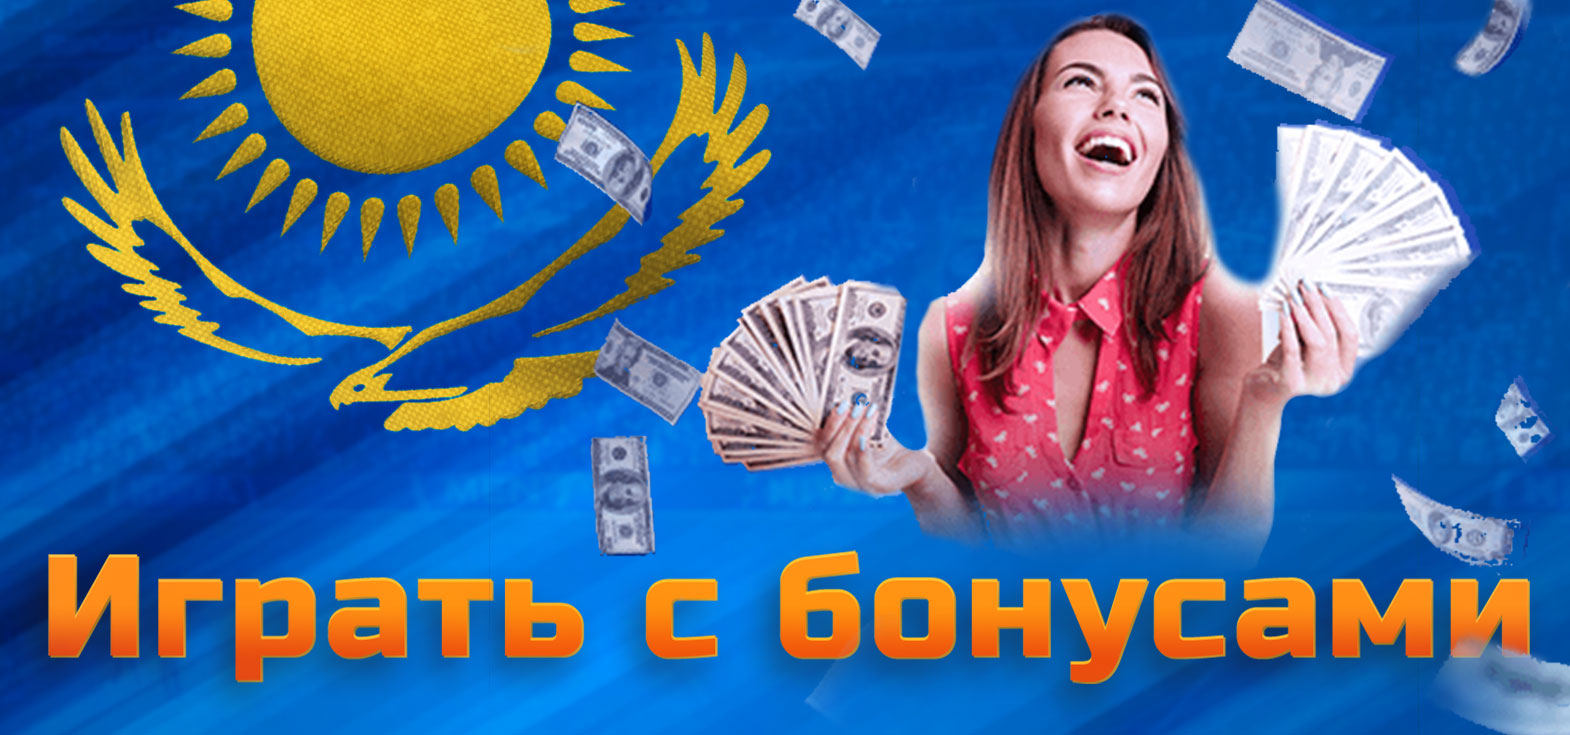 Все доступные бонусы для новых и текущих игроков на платформе Мостбет в Казахстане.